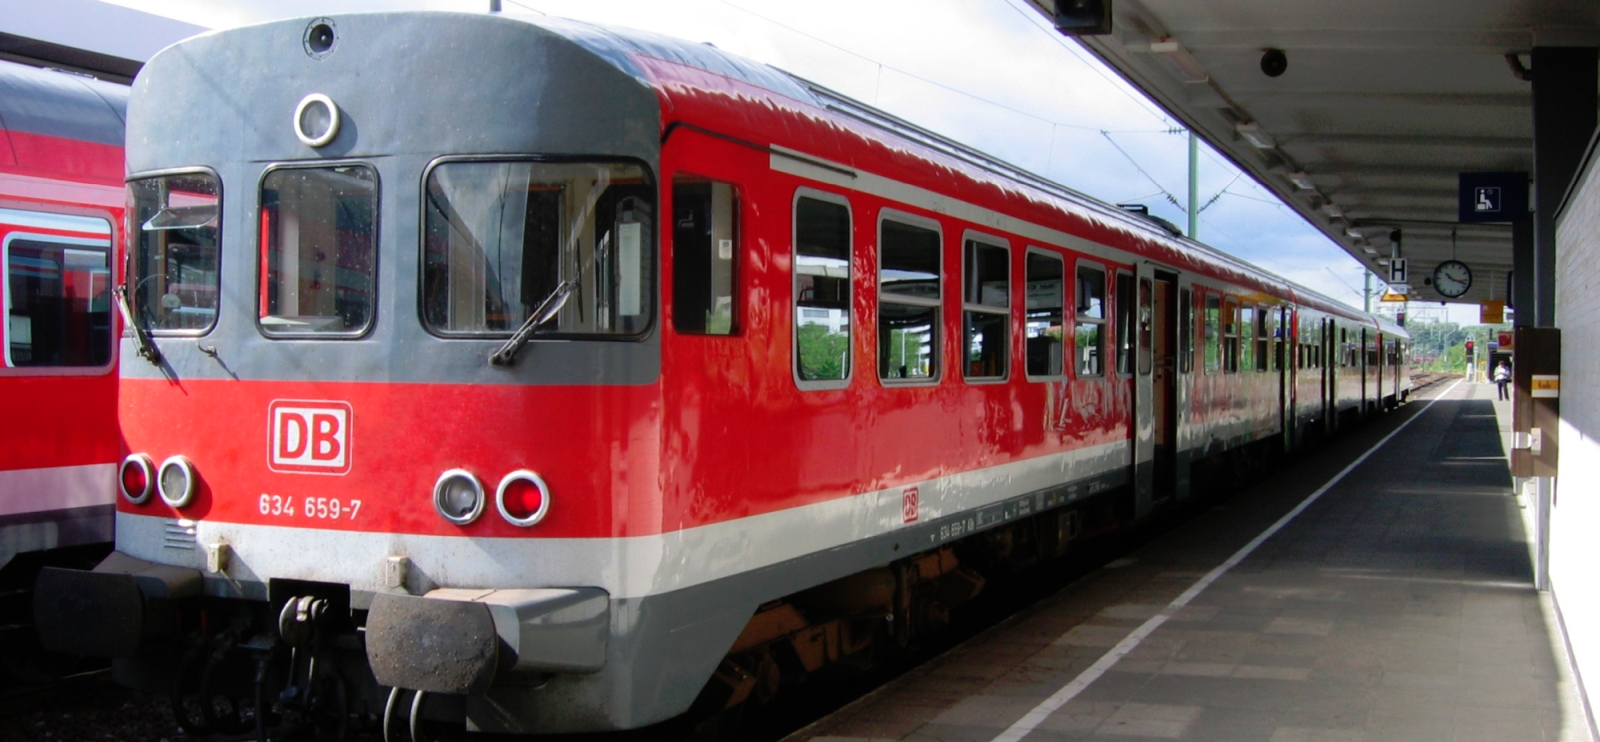 634 659 in Braunschweig station